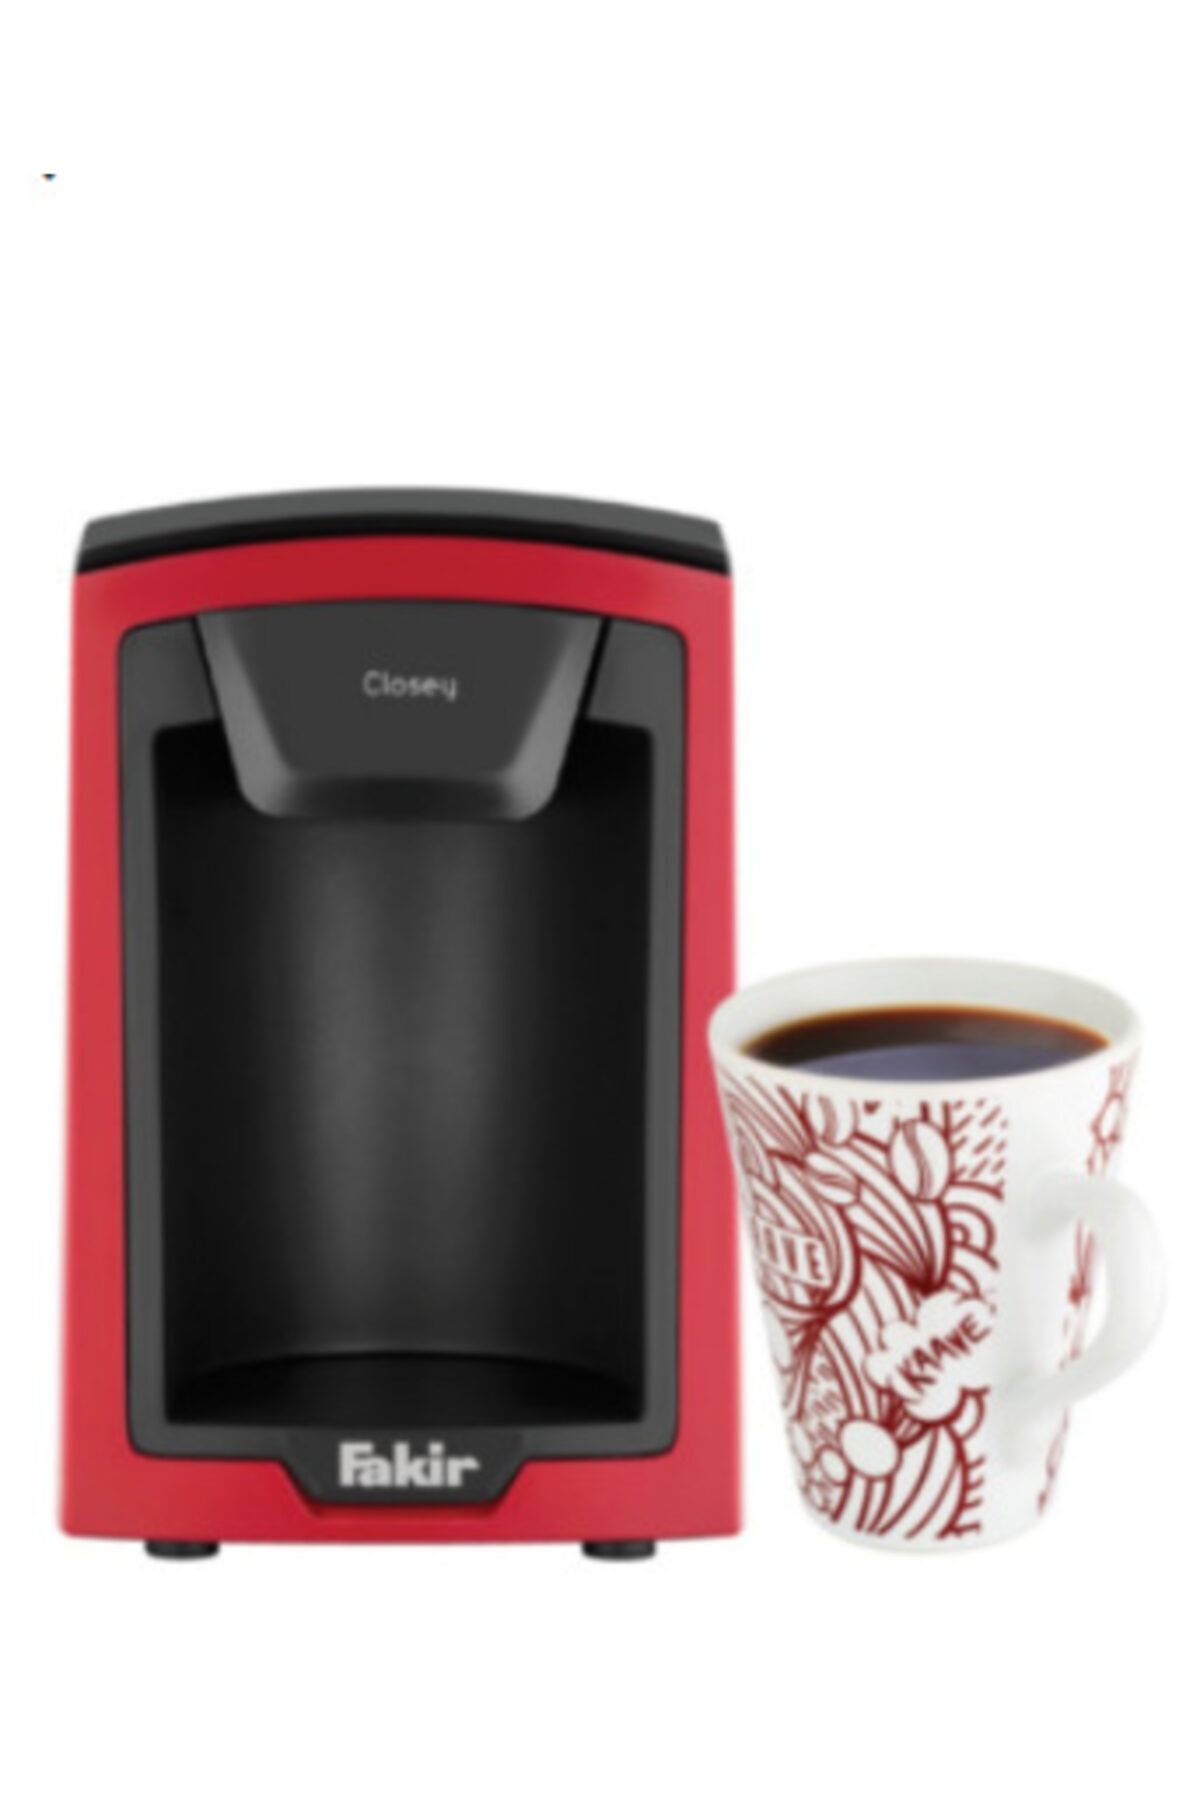 Fakir Kırmızı Closey Kişisel Filtre Kahve Makinesi